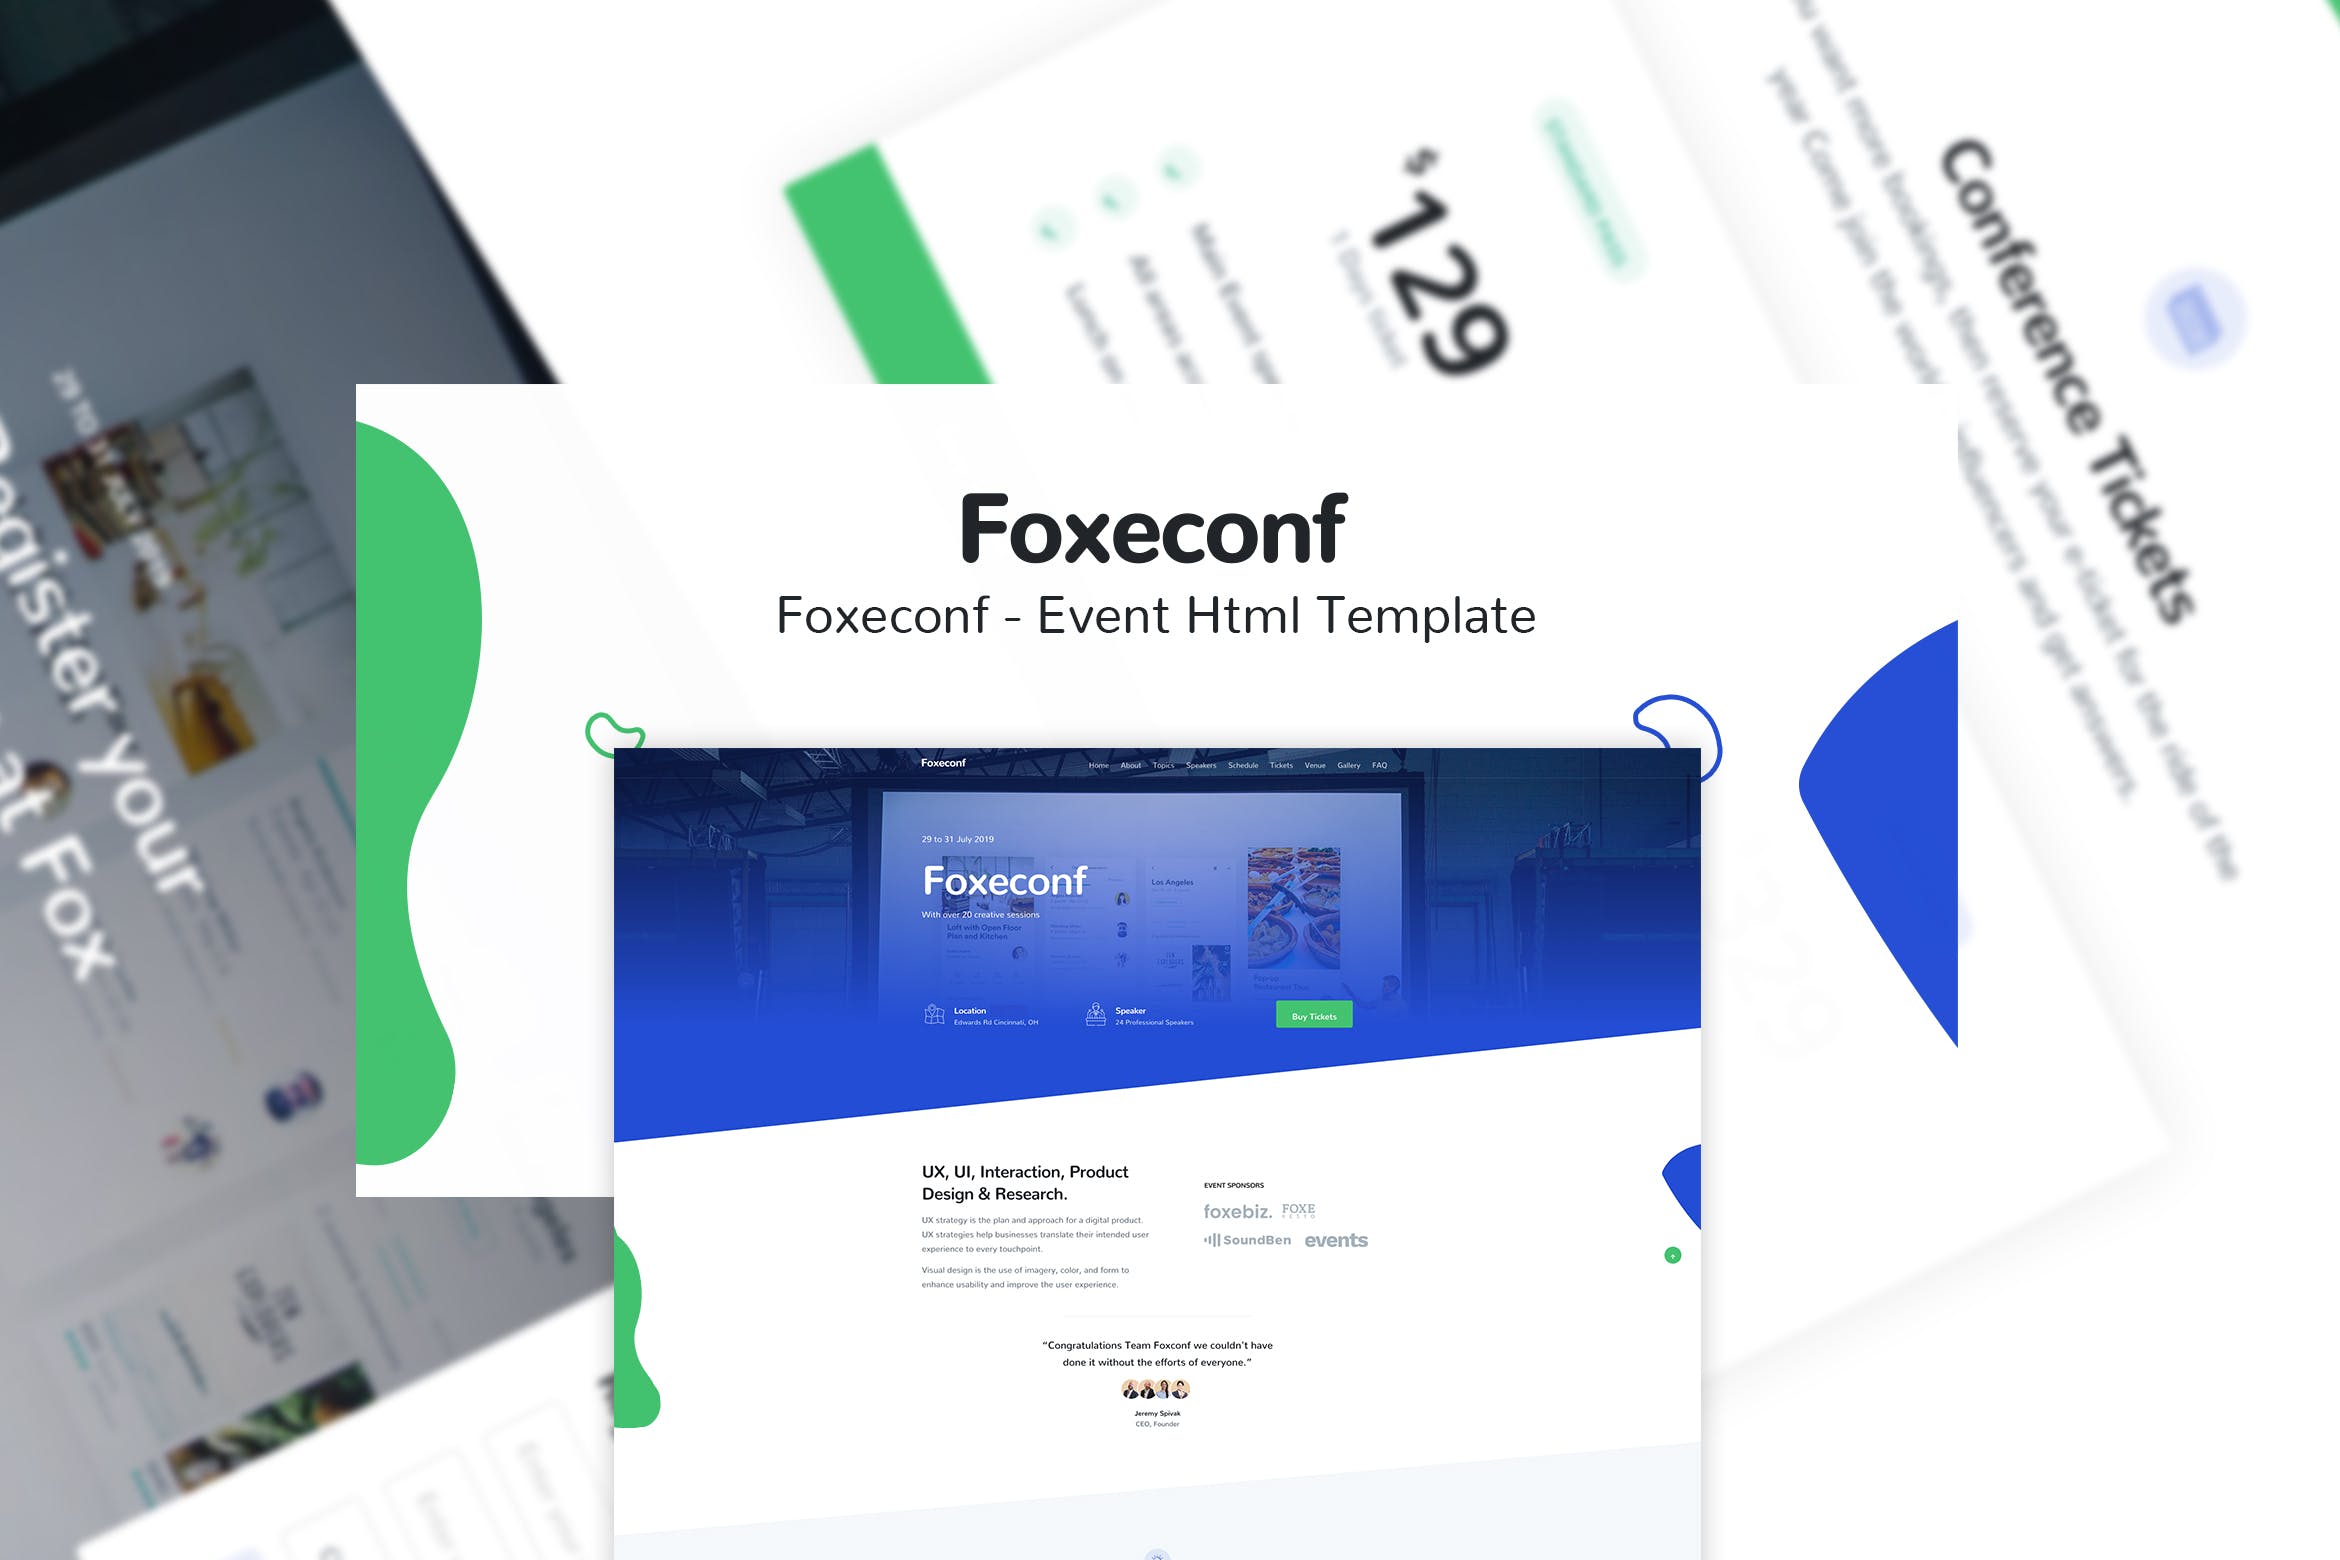 多功能活动和演讲/会议主题网站HTML模板第一素材精选 Foxeconf – Event HTML Template插图